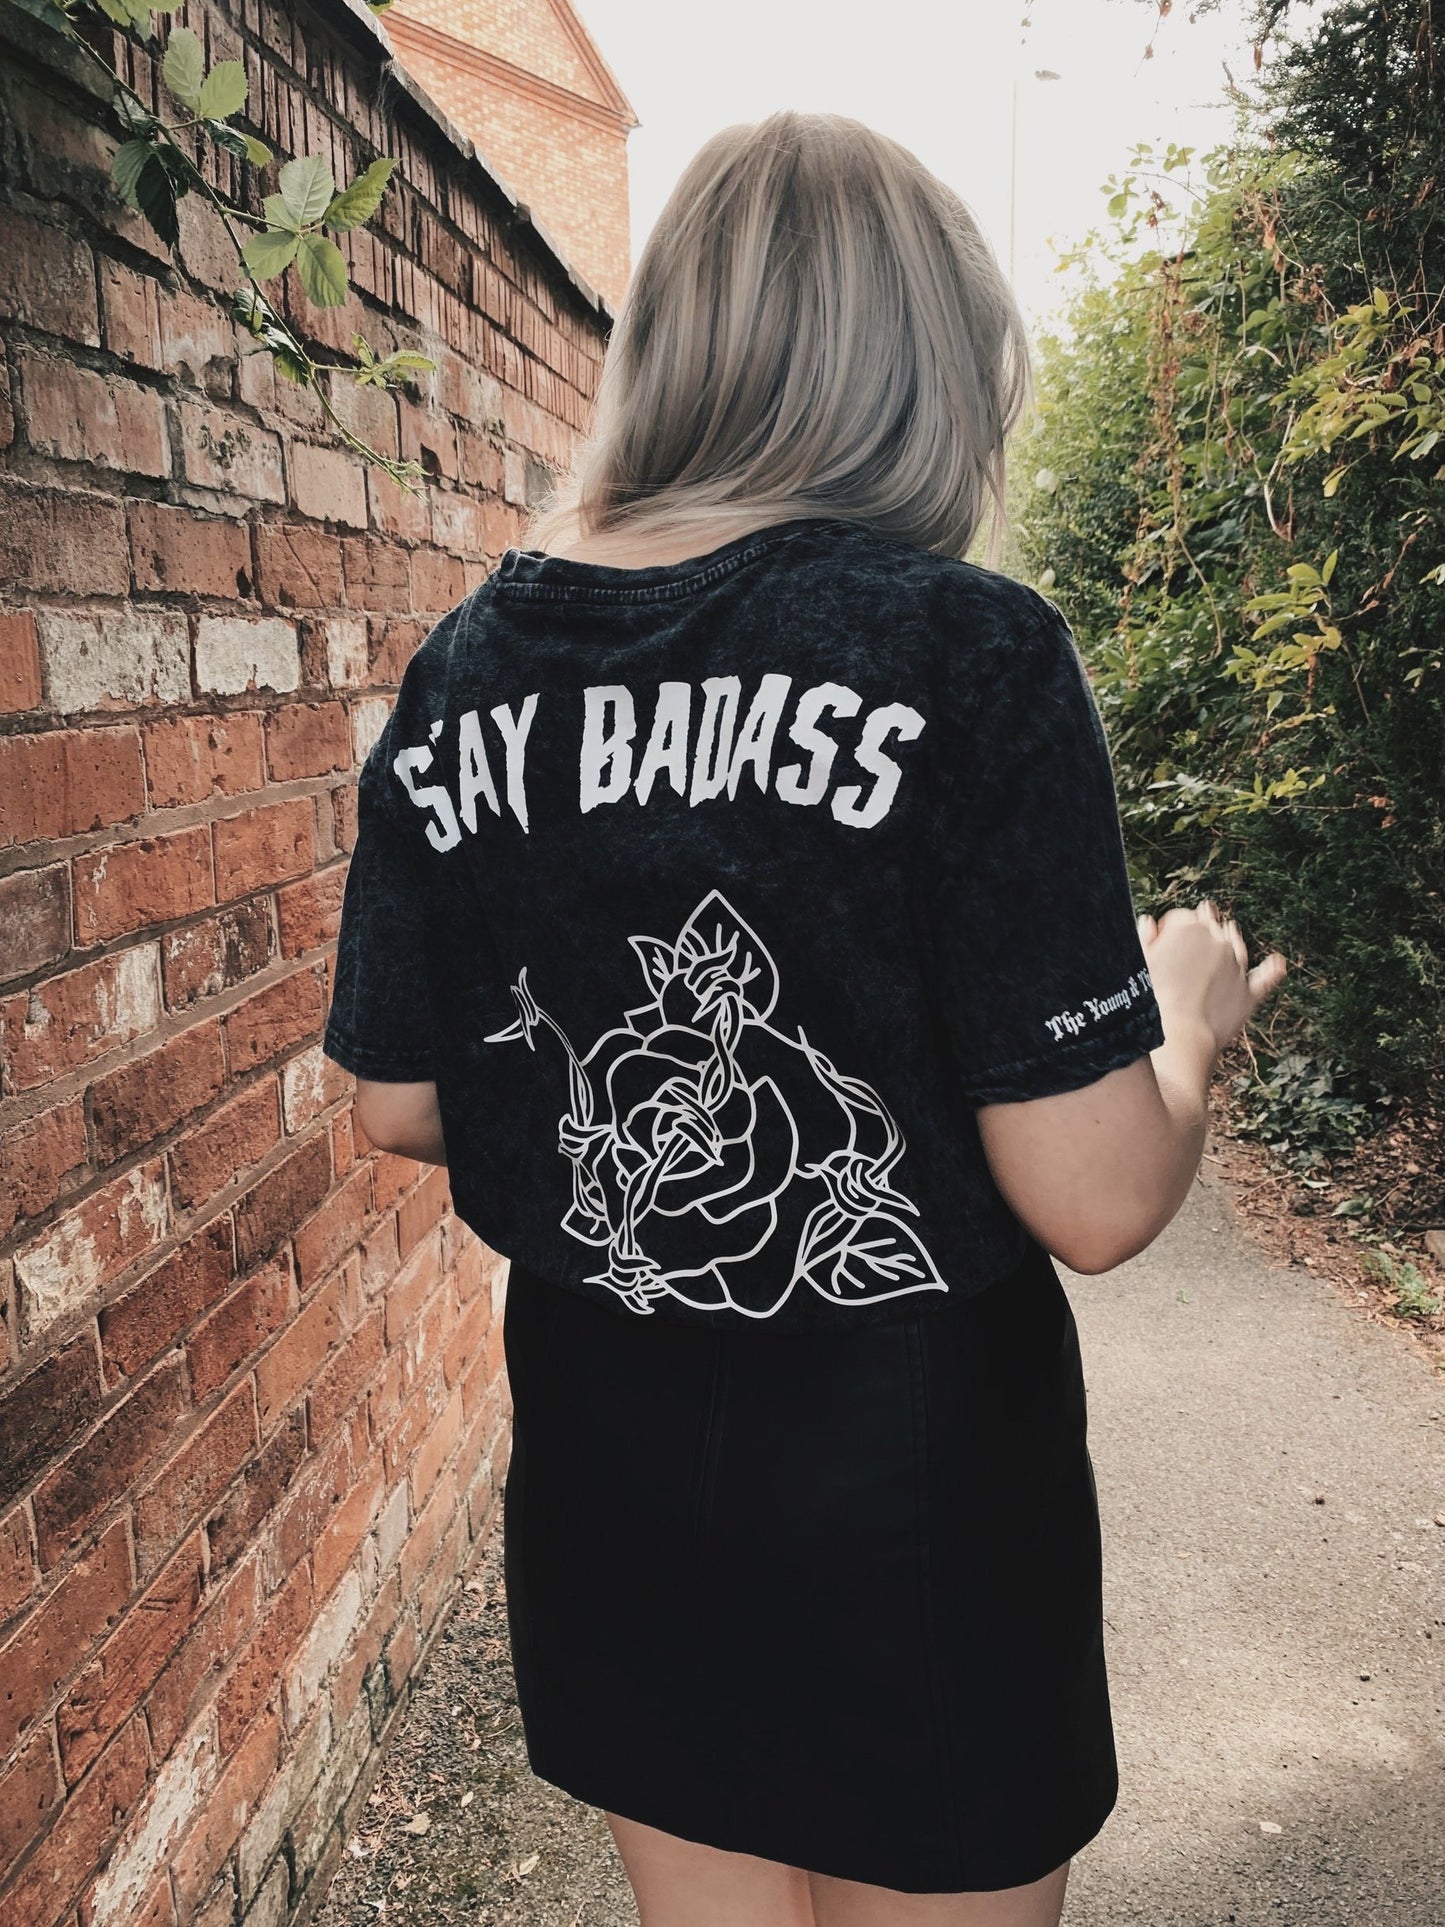 Stay Badass - T-Shirt